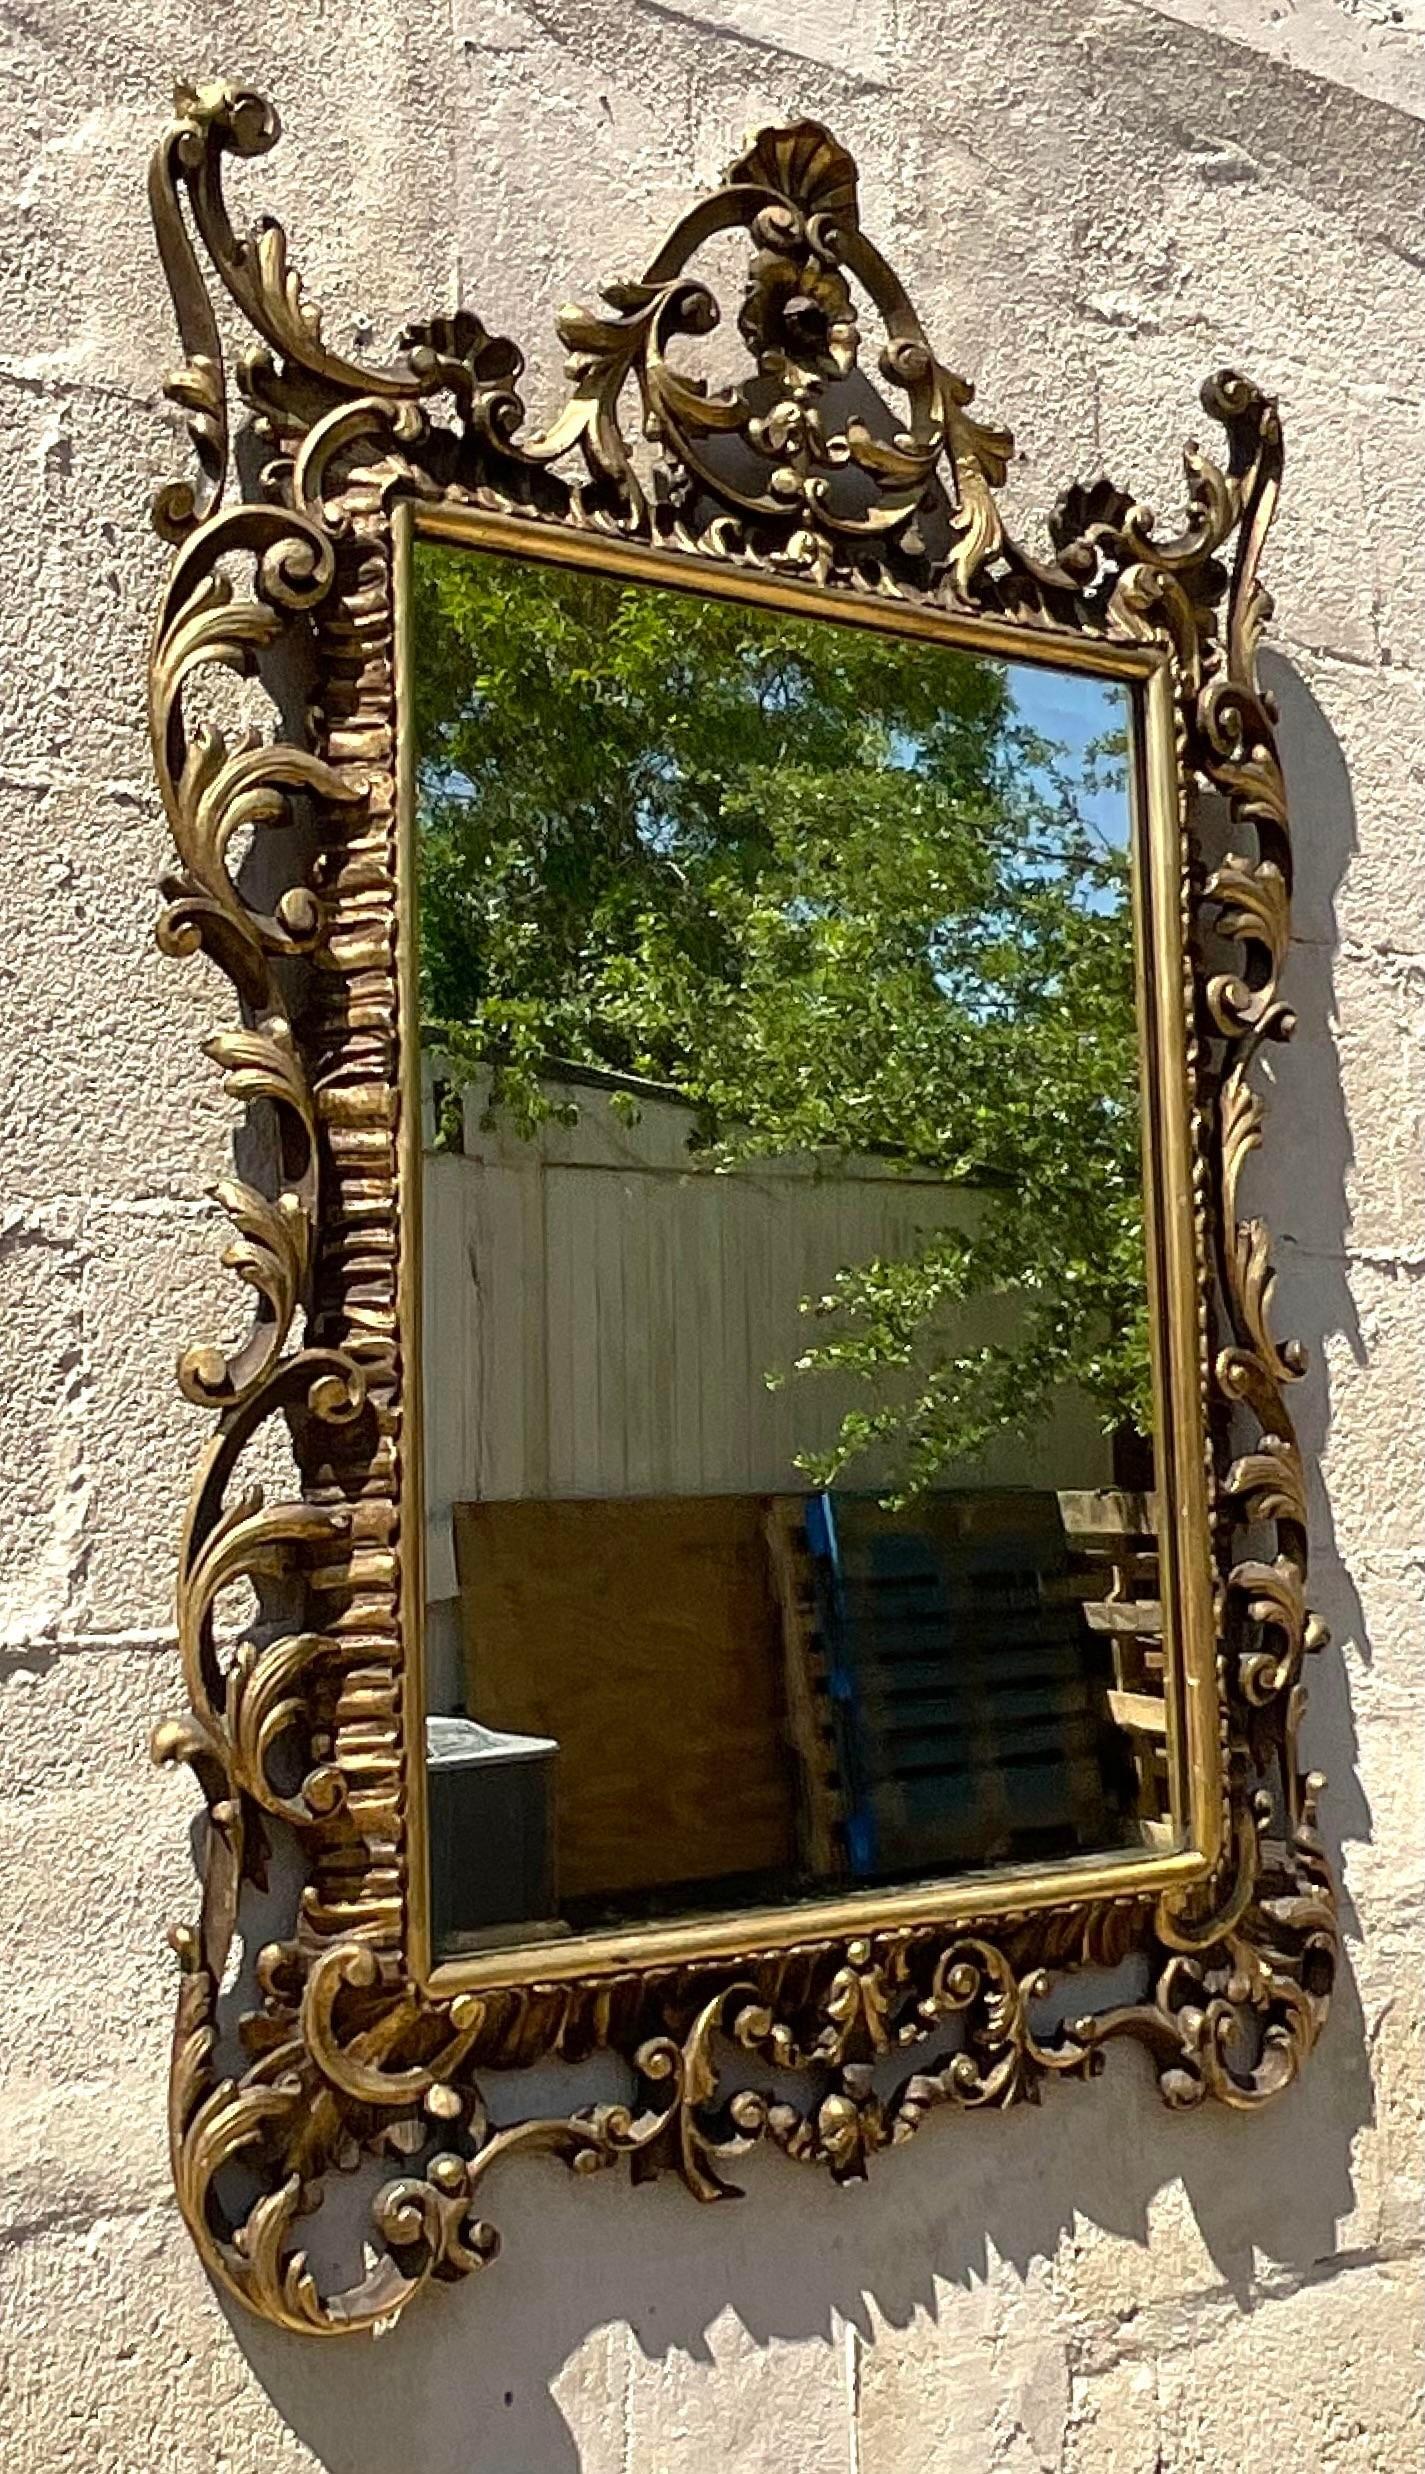 Erleben Sie zeitlosen Luxus mit unserem vergoldeten, geschnitzten Vintage Regency-Spiegel. Dieser von amerikanischer Eleganz durchdrungene Spiegel besticht durch aufwändig geschnitzte Details und eine glänzende Vergoldung. Er verbindet klassisches